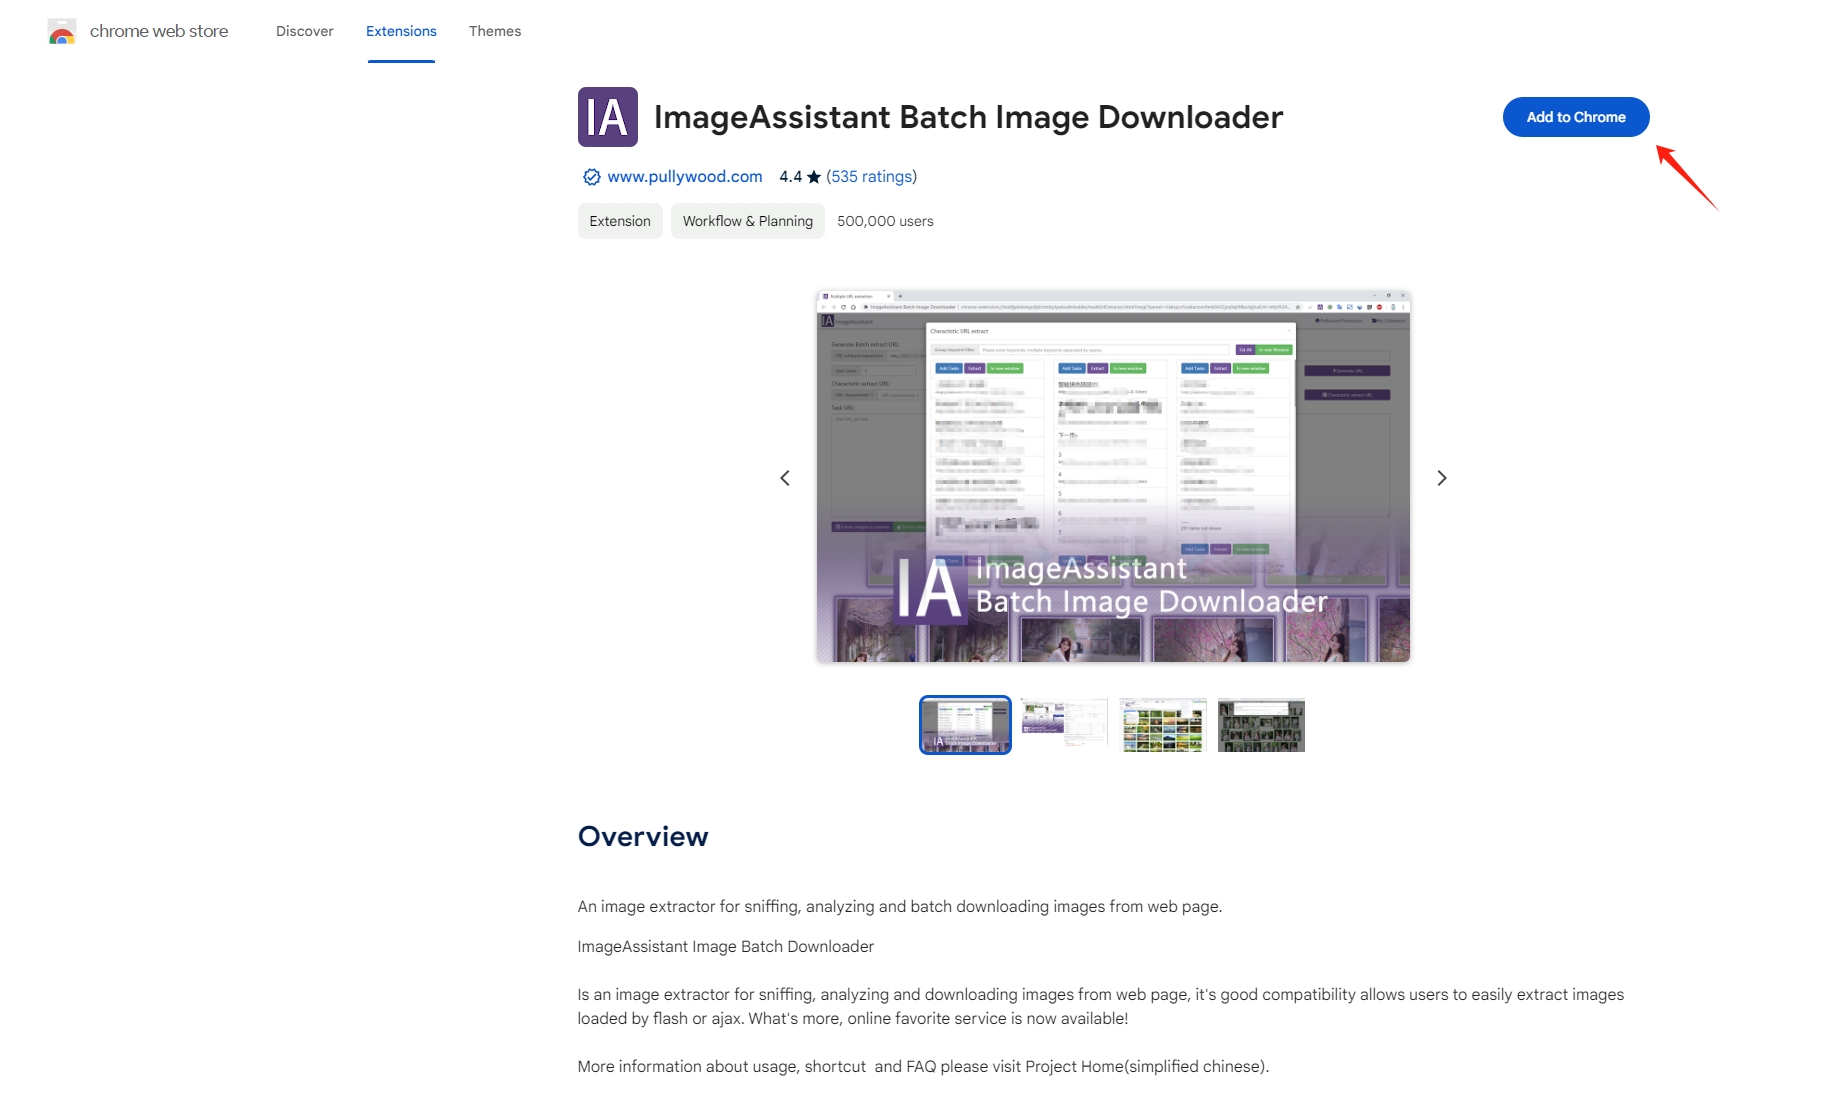 Installieren Sie die ImageAssistant-Batch-Image-Downloader-Erweiterung